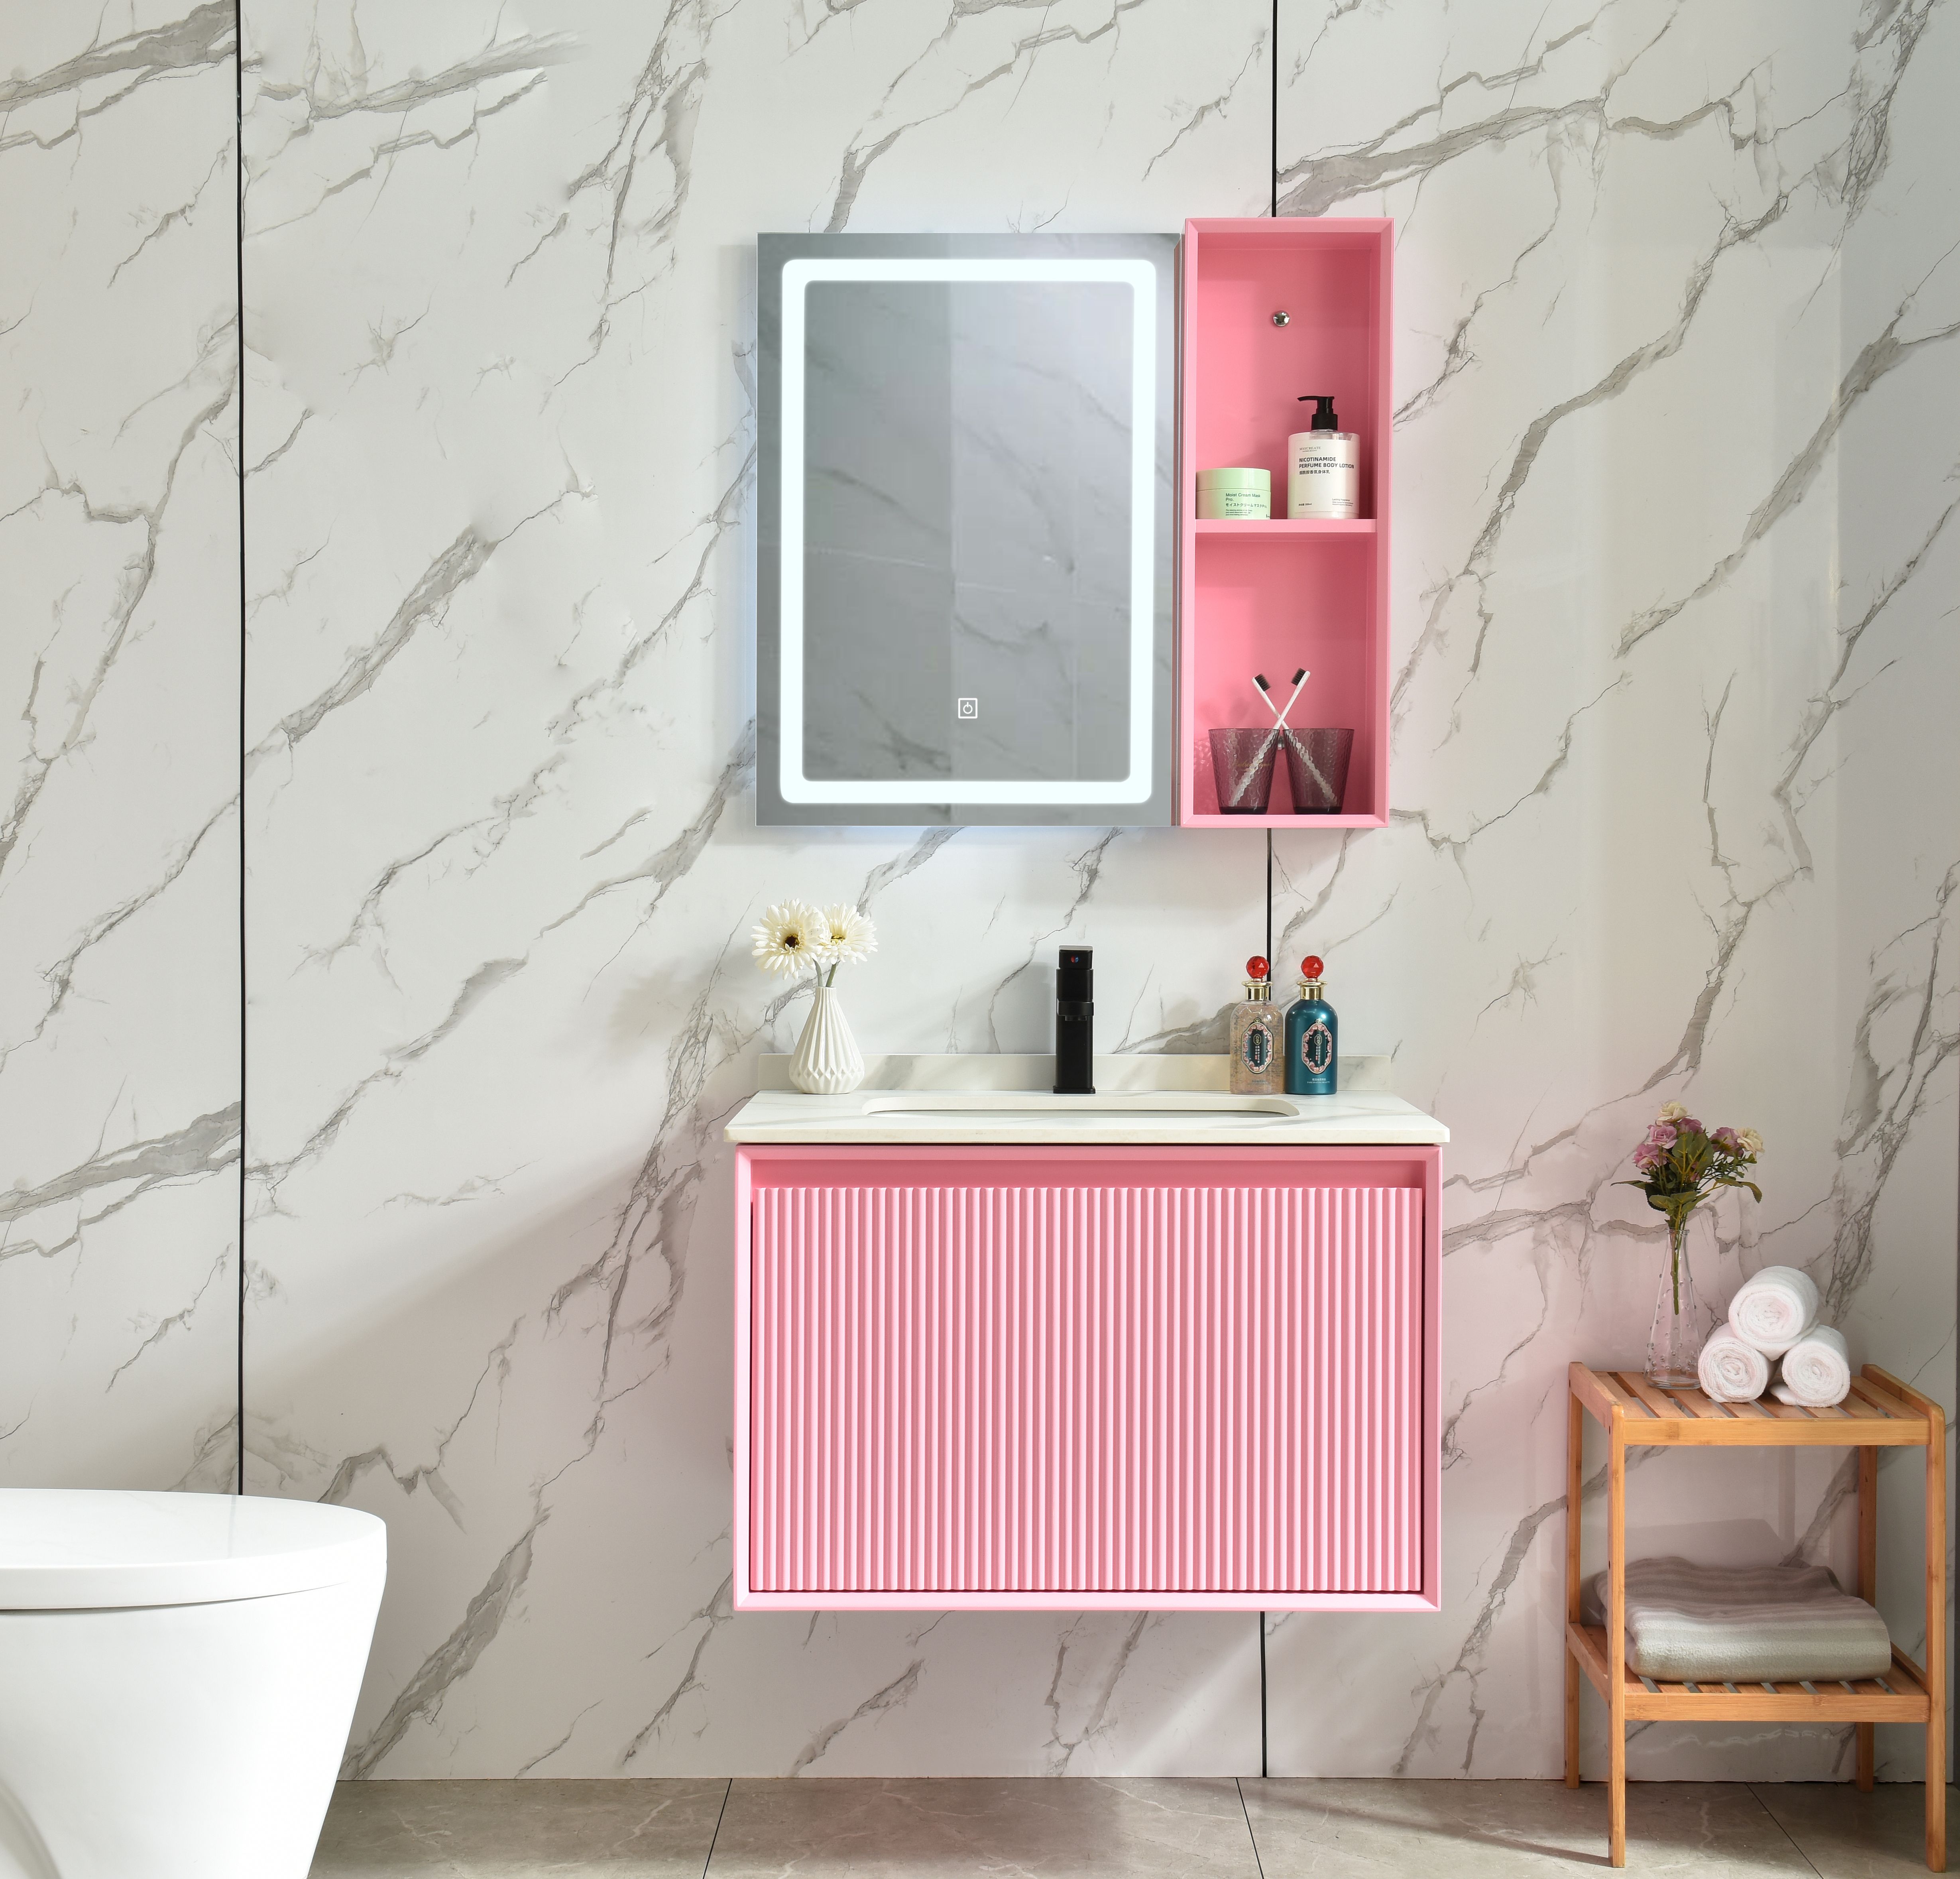 Solid Wood German Style Bathroom Vanity